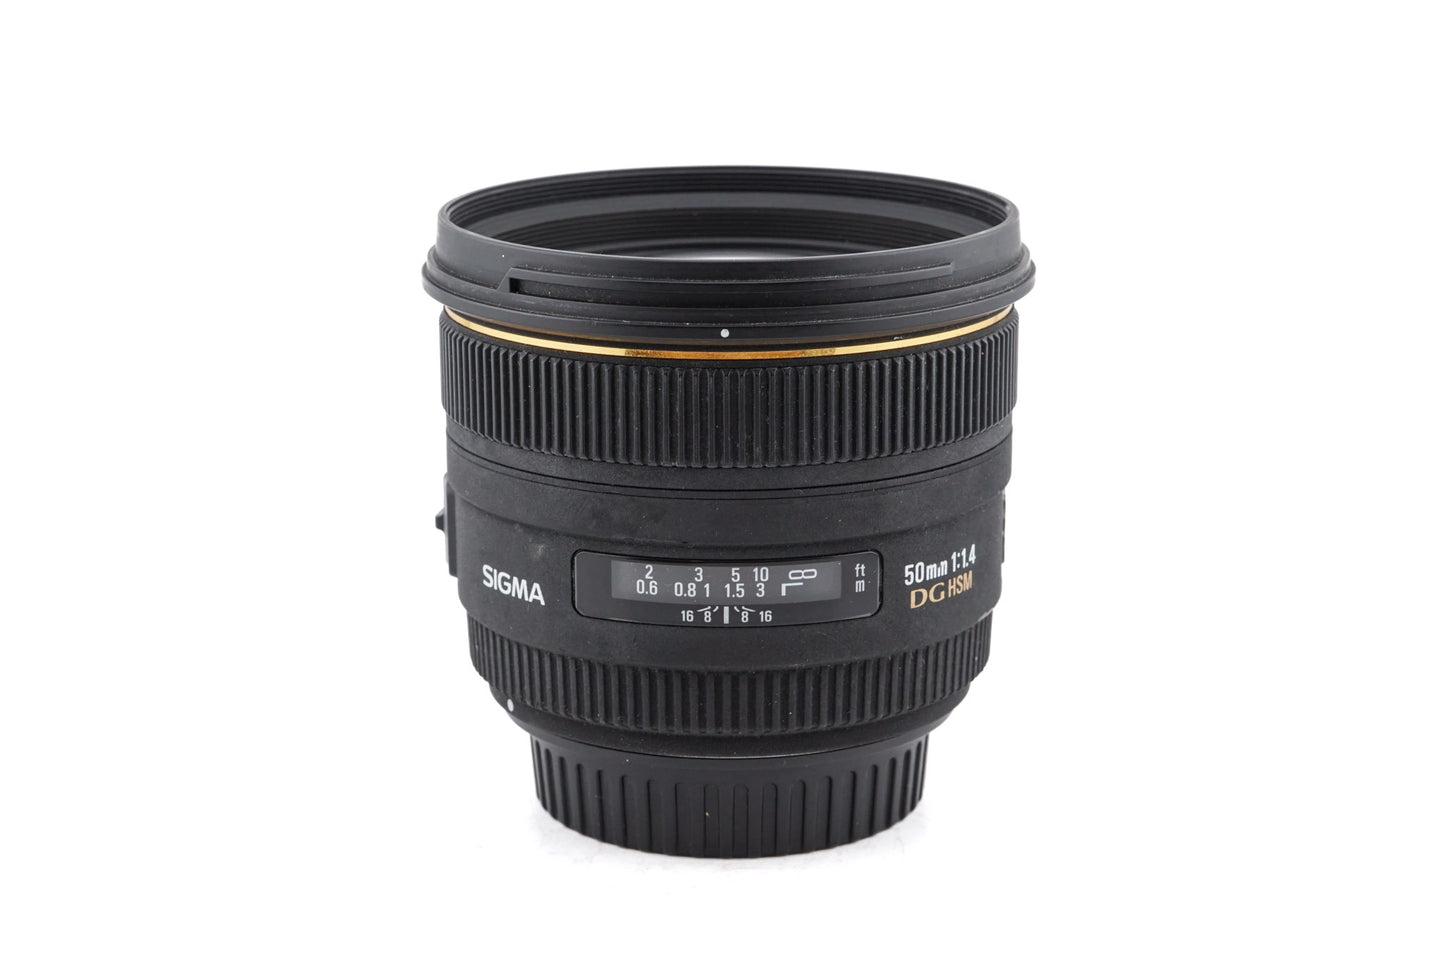 Sigma 50mm f1.4 EX DG HSM - Lens